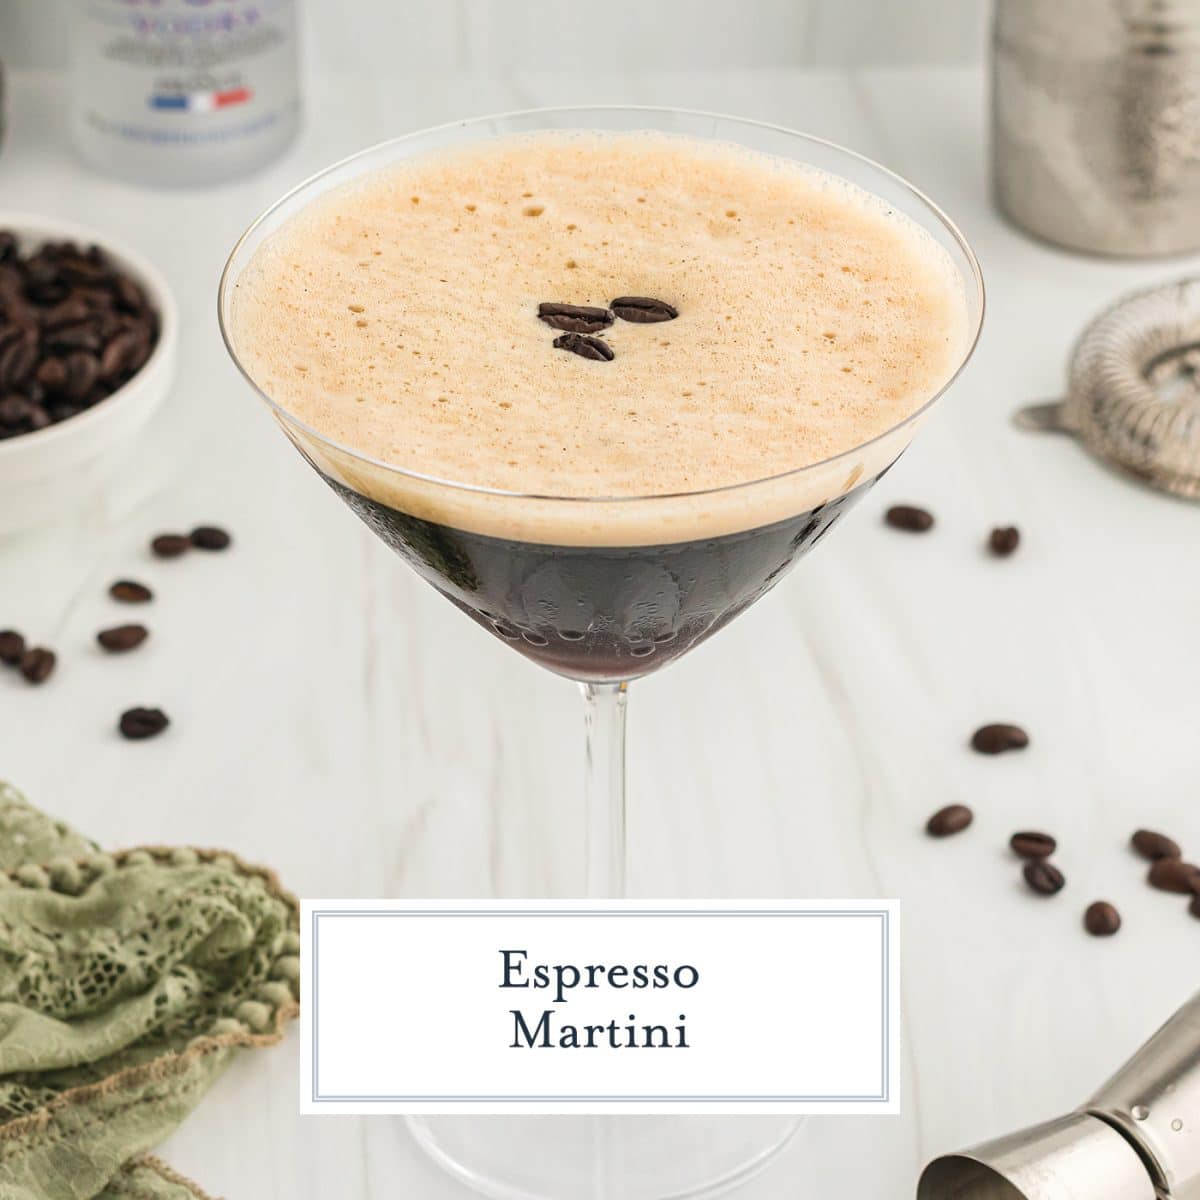 Cold Brew Martini Recipe (Make One Without Espresso!)